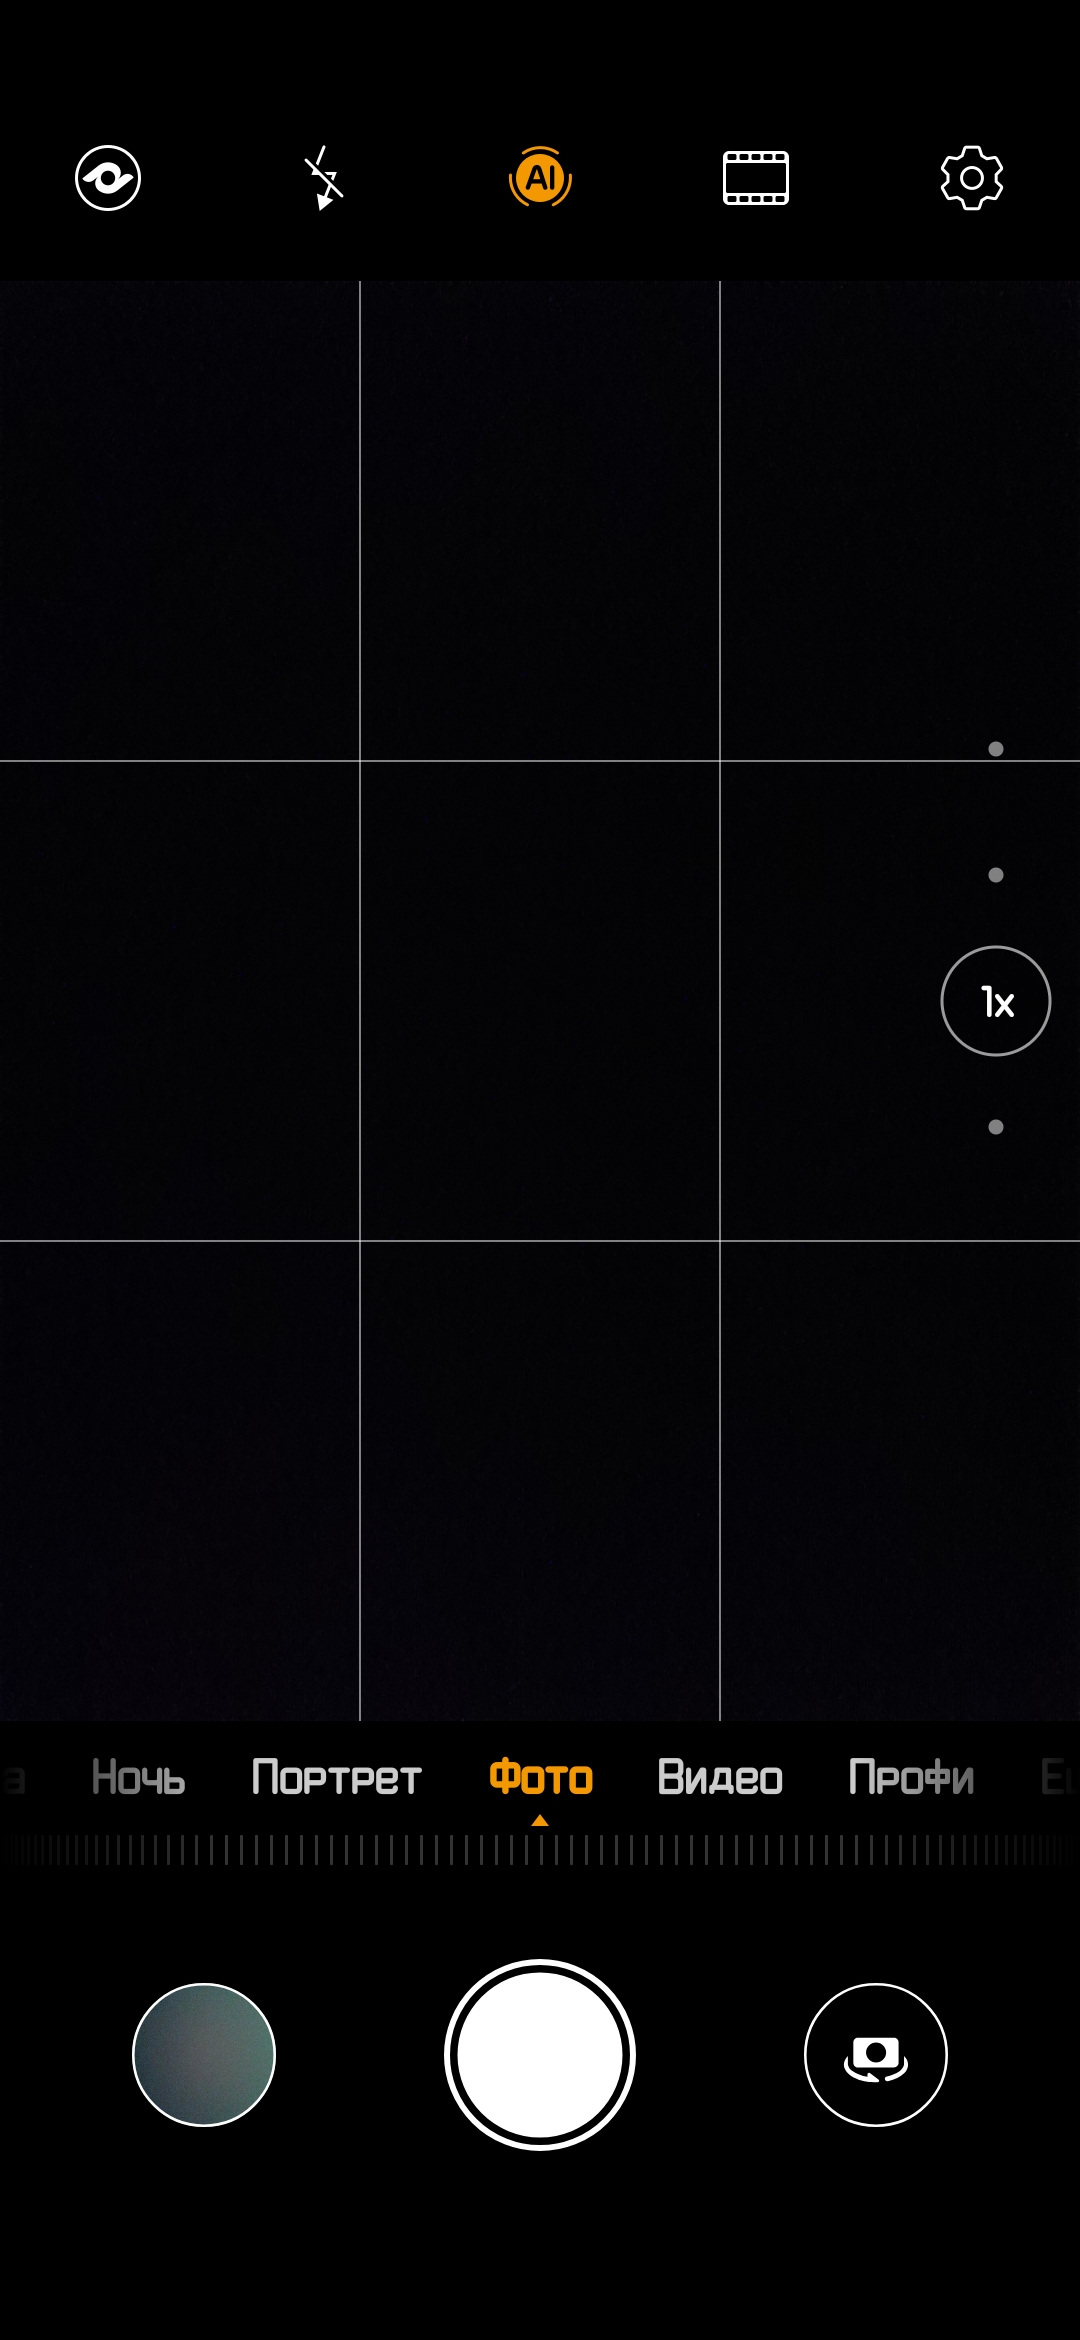 Обзор Huawei P30 Pro: прибор ночного видения-319